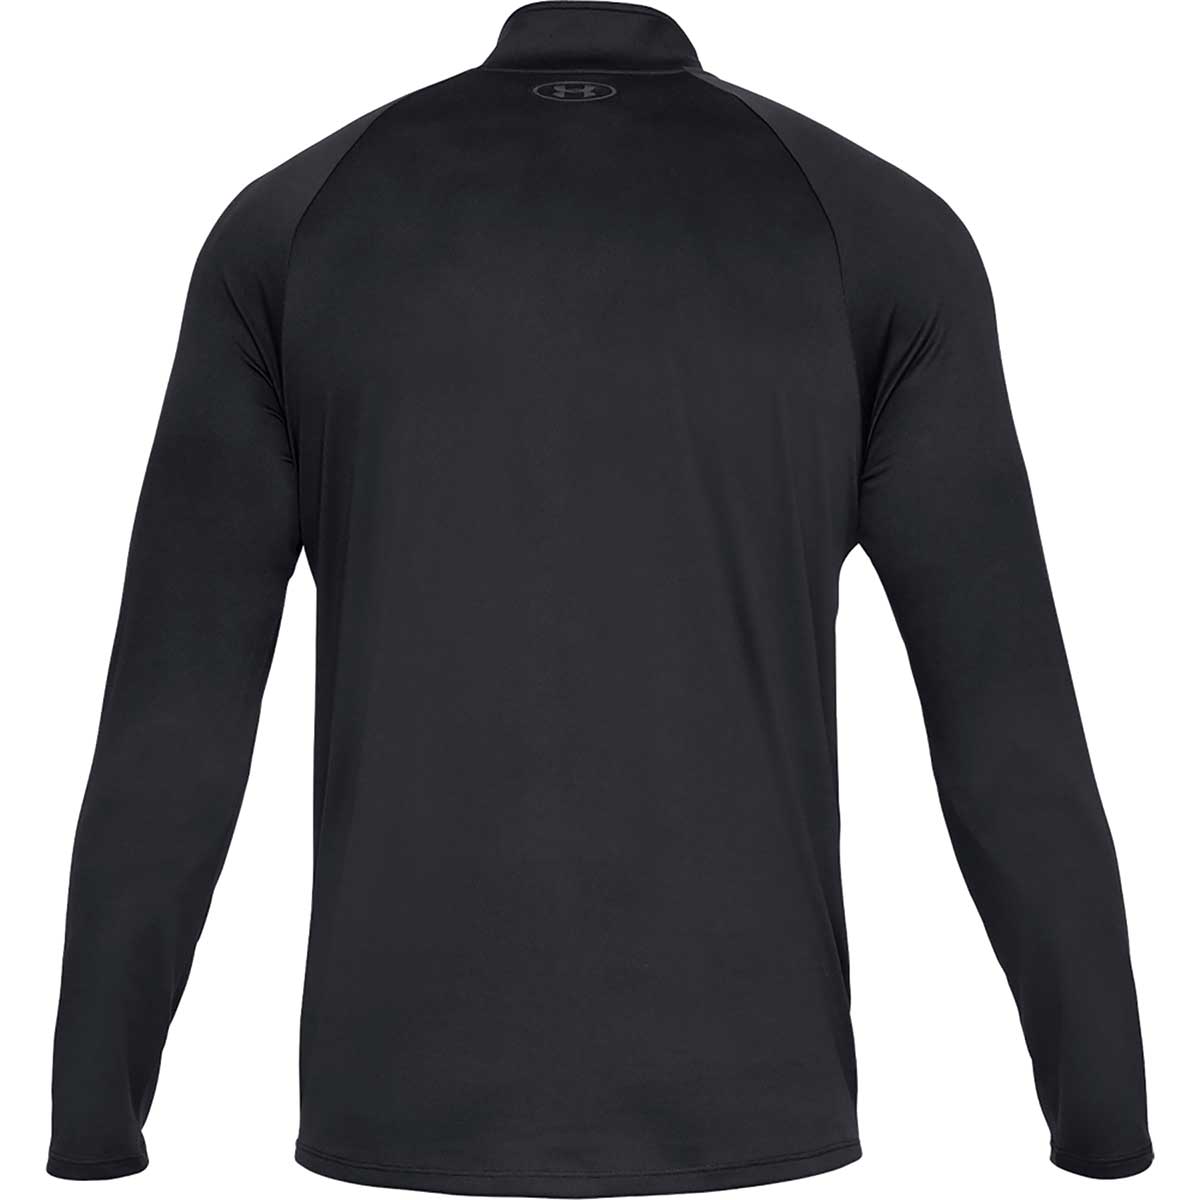 Under Armour Men's UA Tech 2.0 1/2-Zip Long Sleeve Shirt